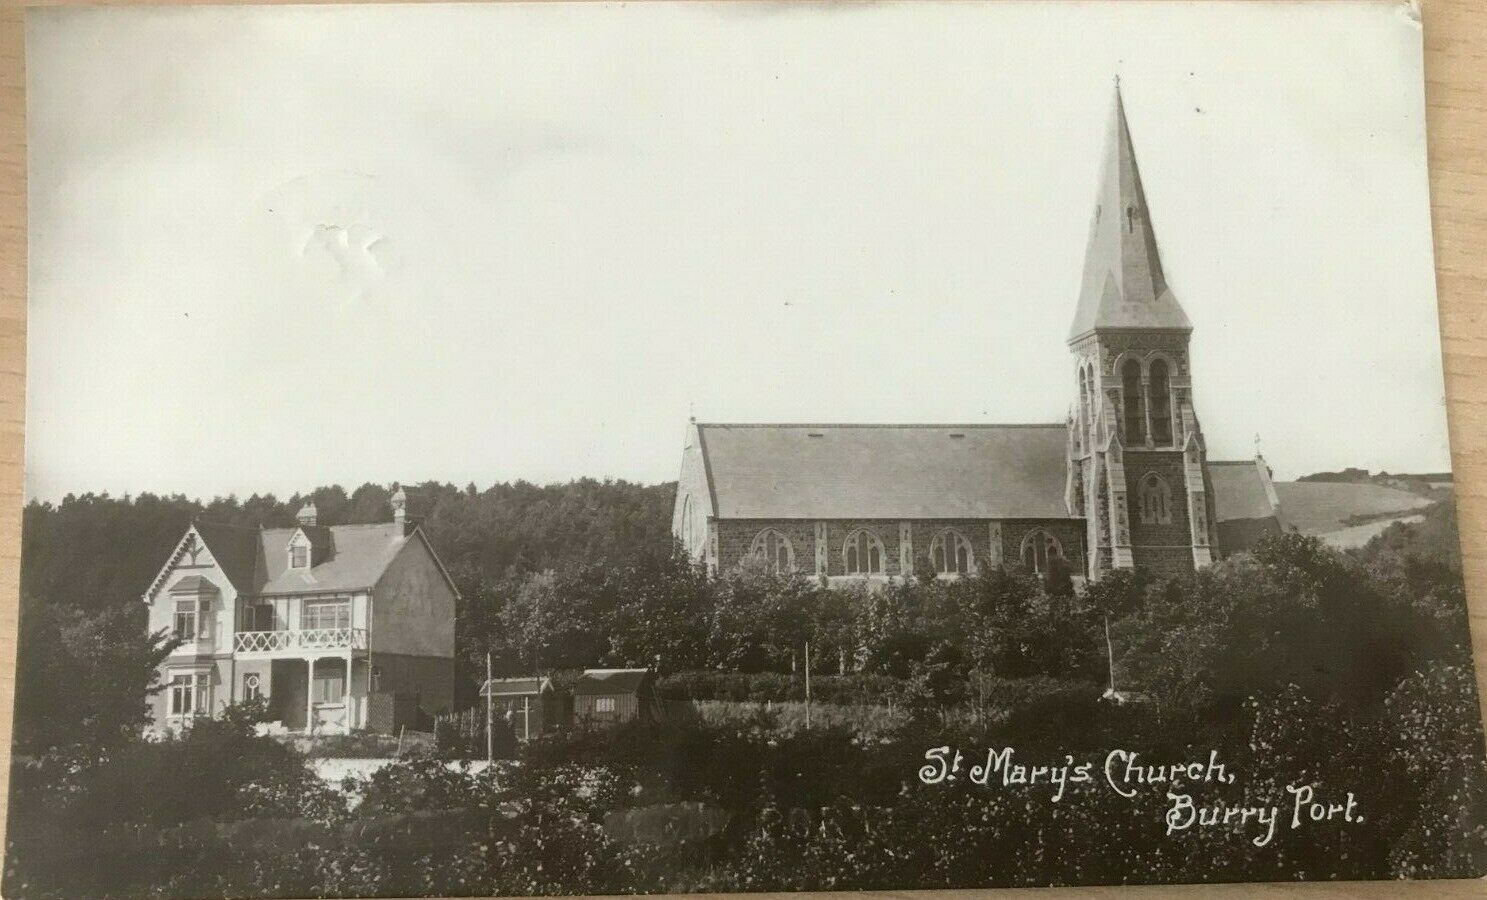 House Clearance - BURRY PORT ST MARY'S CHURCH 1913 FJ MORGAN REAL PHOTO POSTCARD